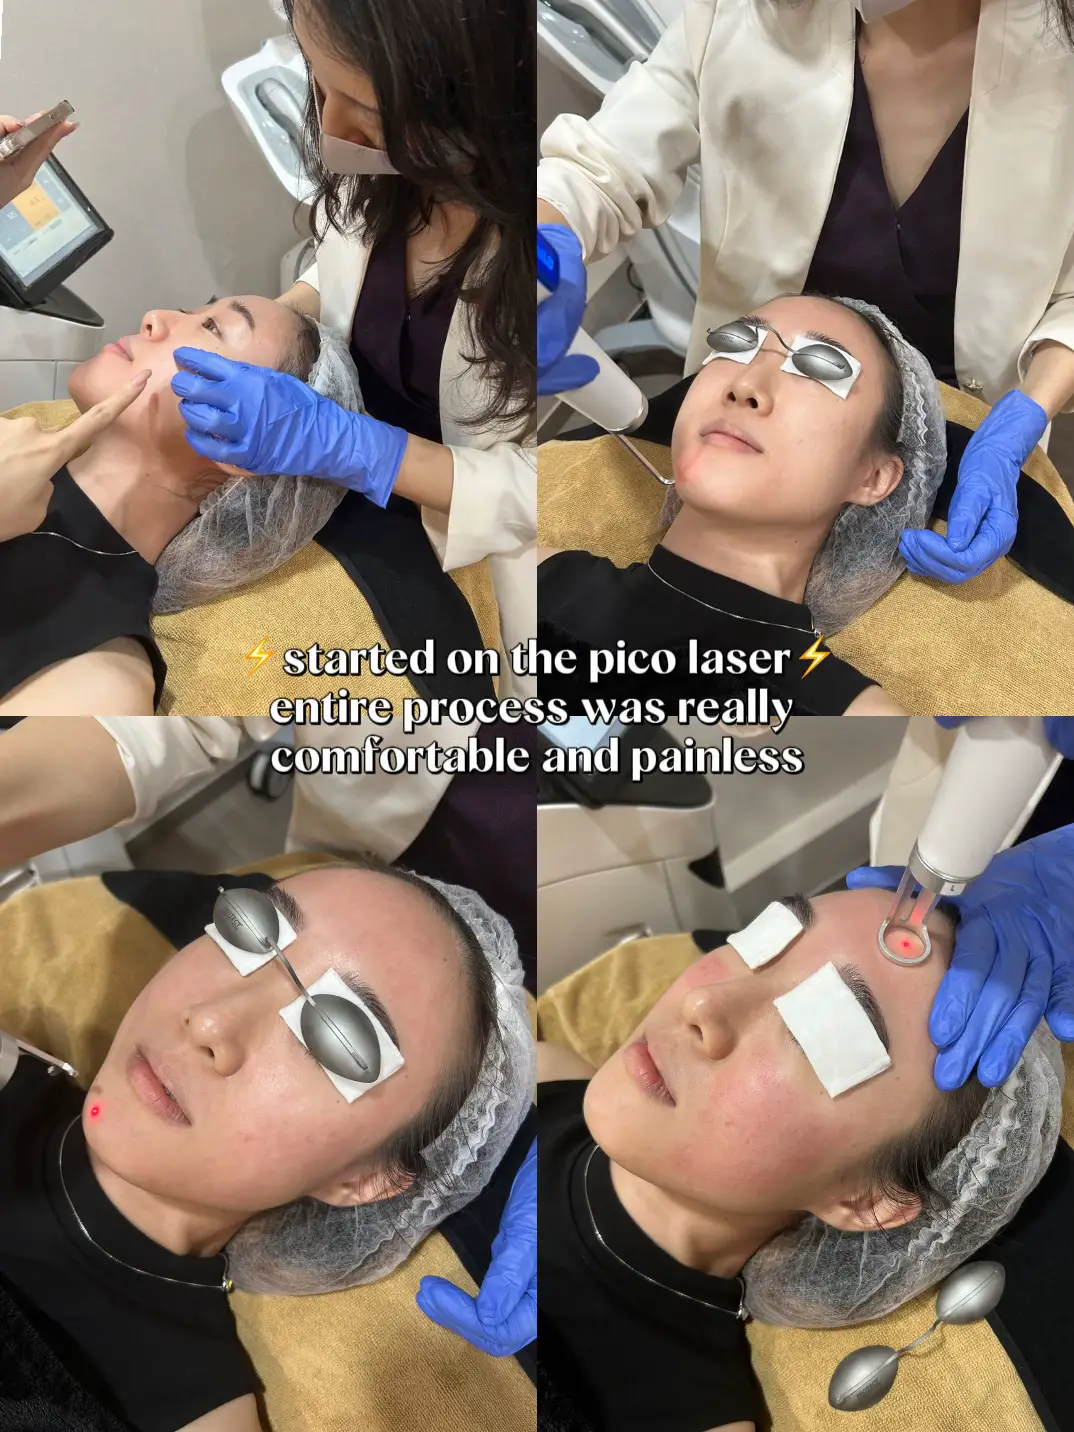 Pico Laser after 2 wks⚡️ Let’s talk skin treatments's images(4)